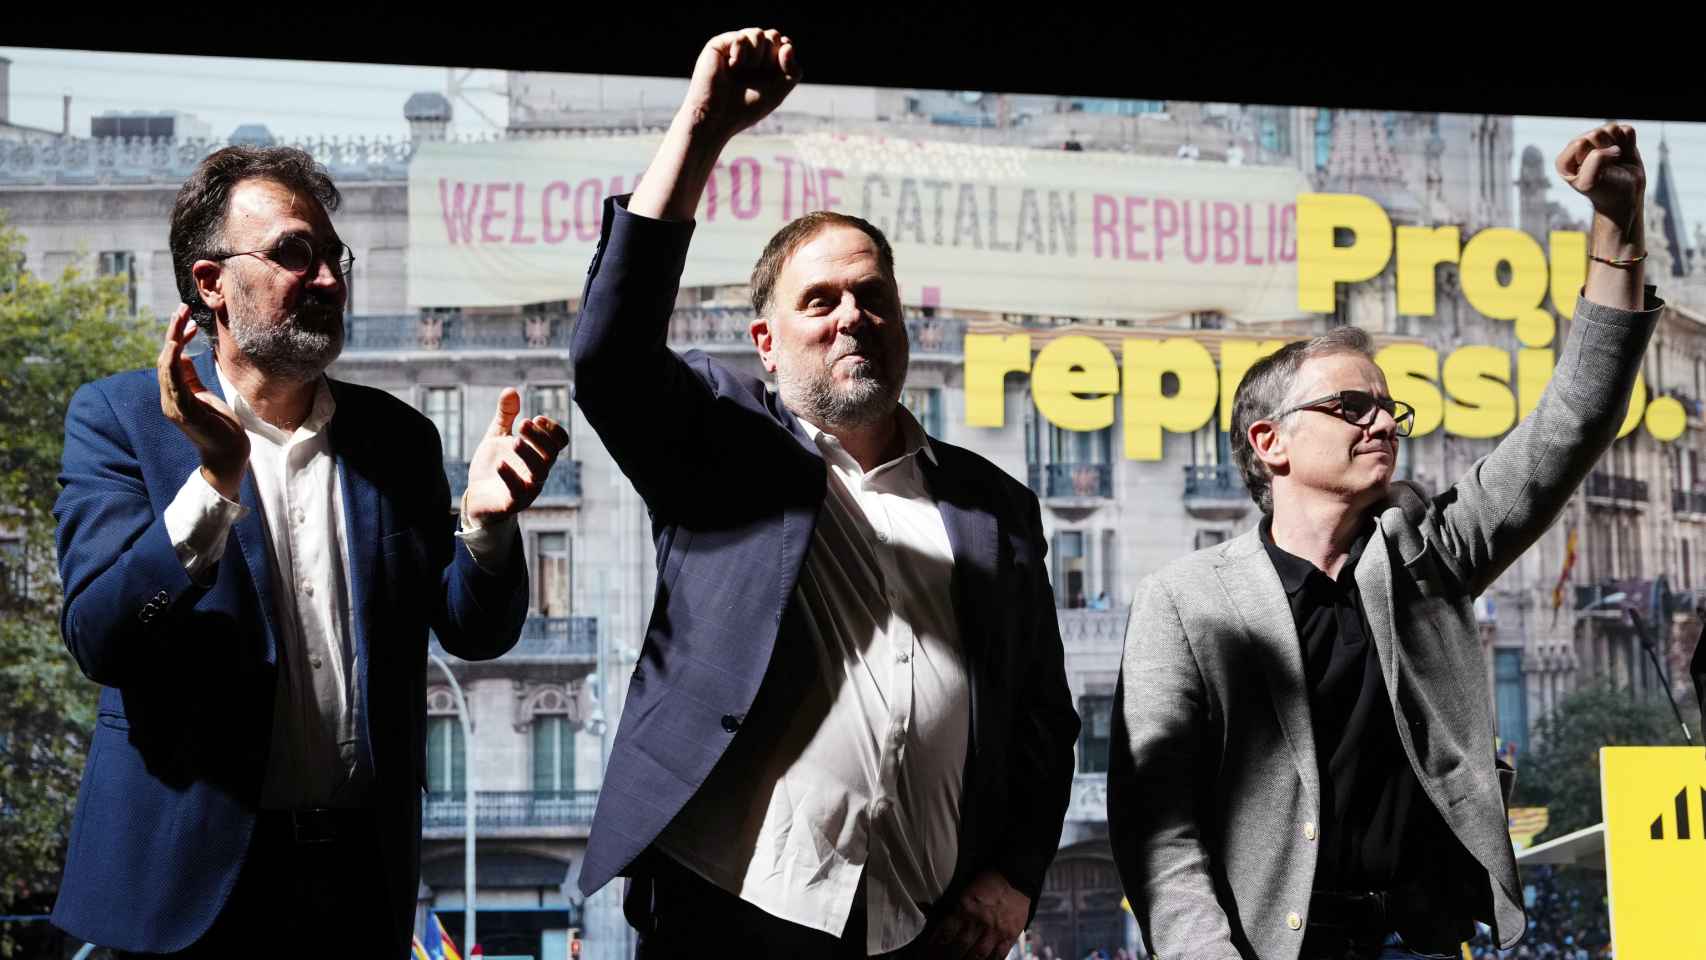 Lluís Salvadó y Josep Maria Jové, hombres de confianza de Oriol Junqueras, le acompañan en un evento durante su etapa como vicepresidente de la Generalitat.